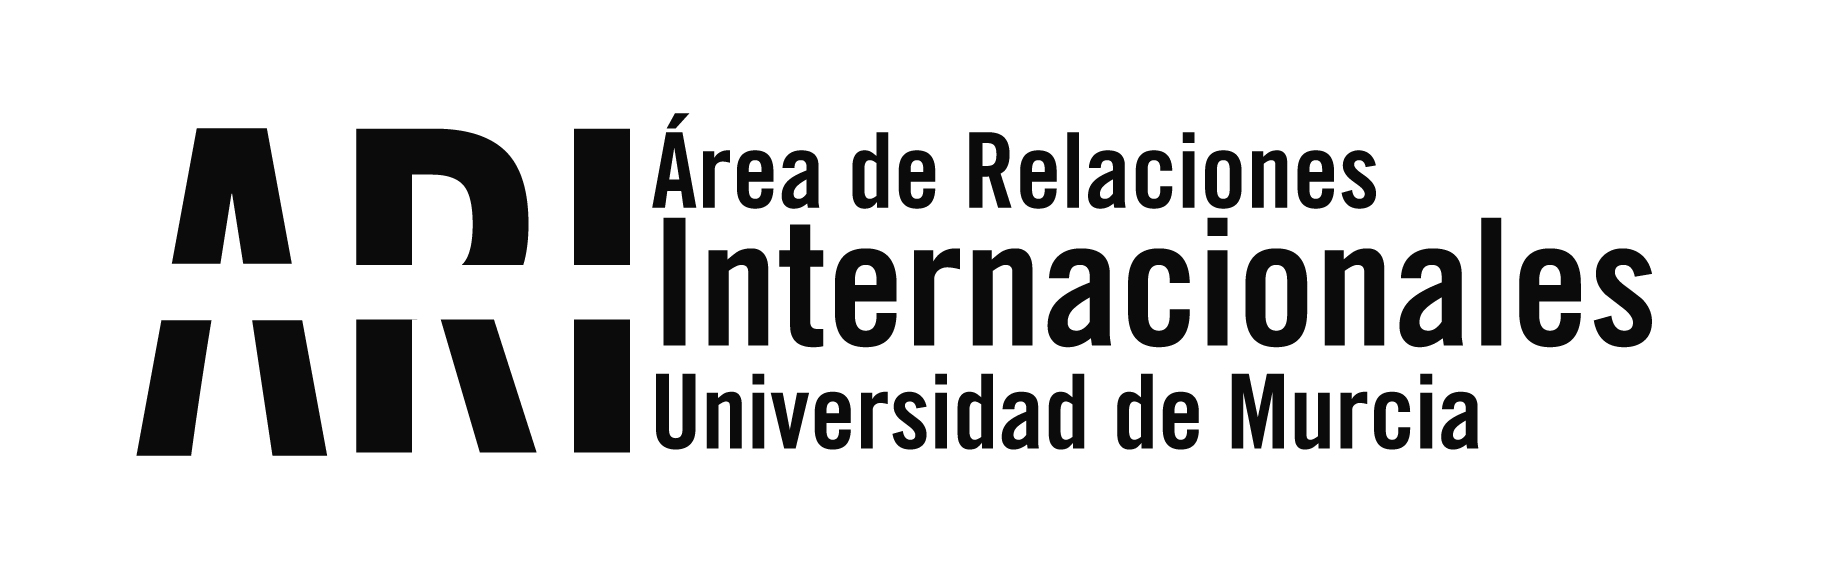 Convocatoria de Becas del Gobierno de Japón, para graduados universitarios españoles - Área de Relaciones Internacionales